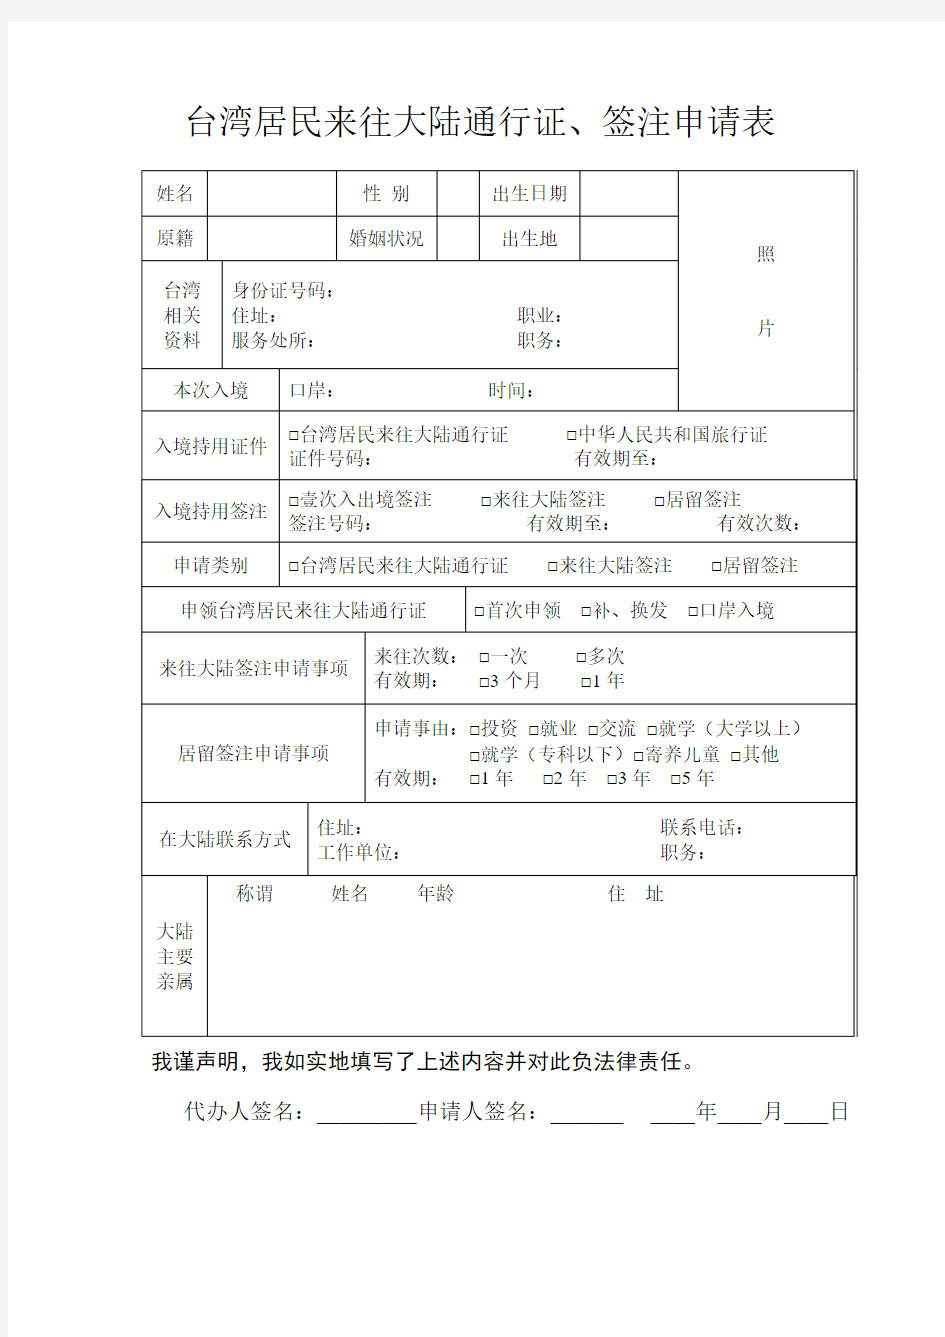 台湾居民来往大陆通行证签注